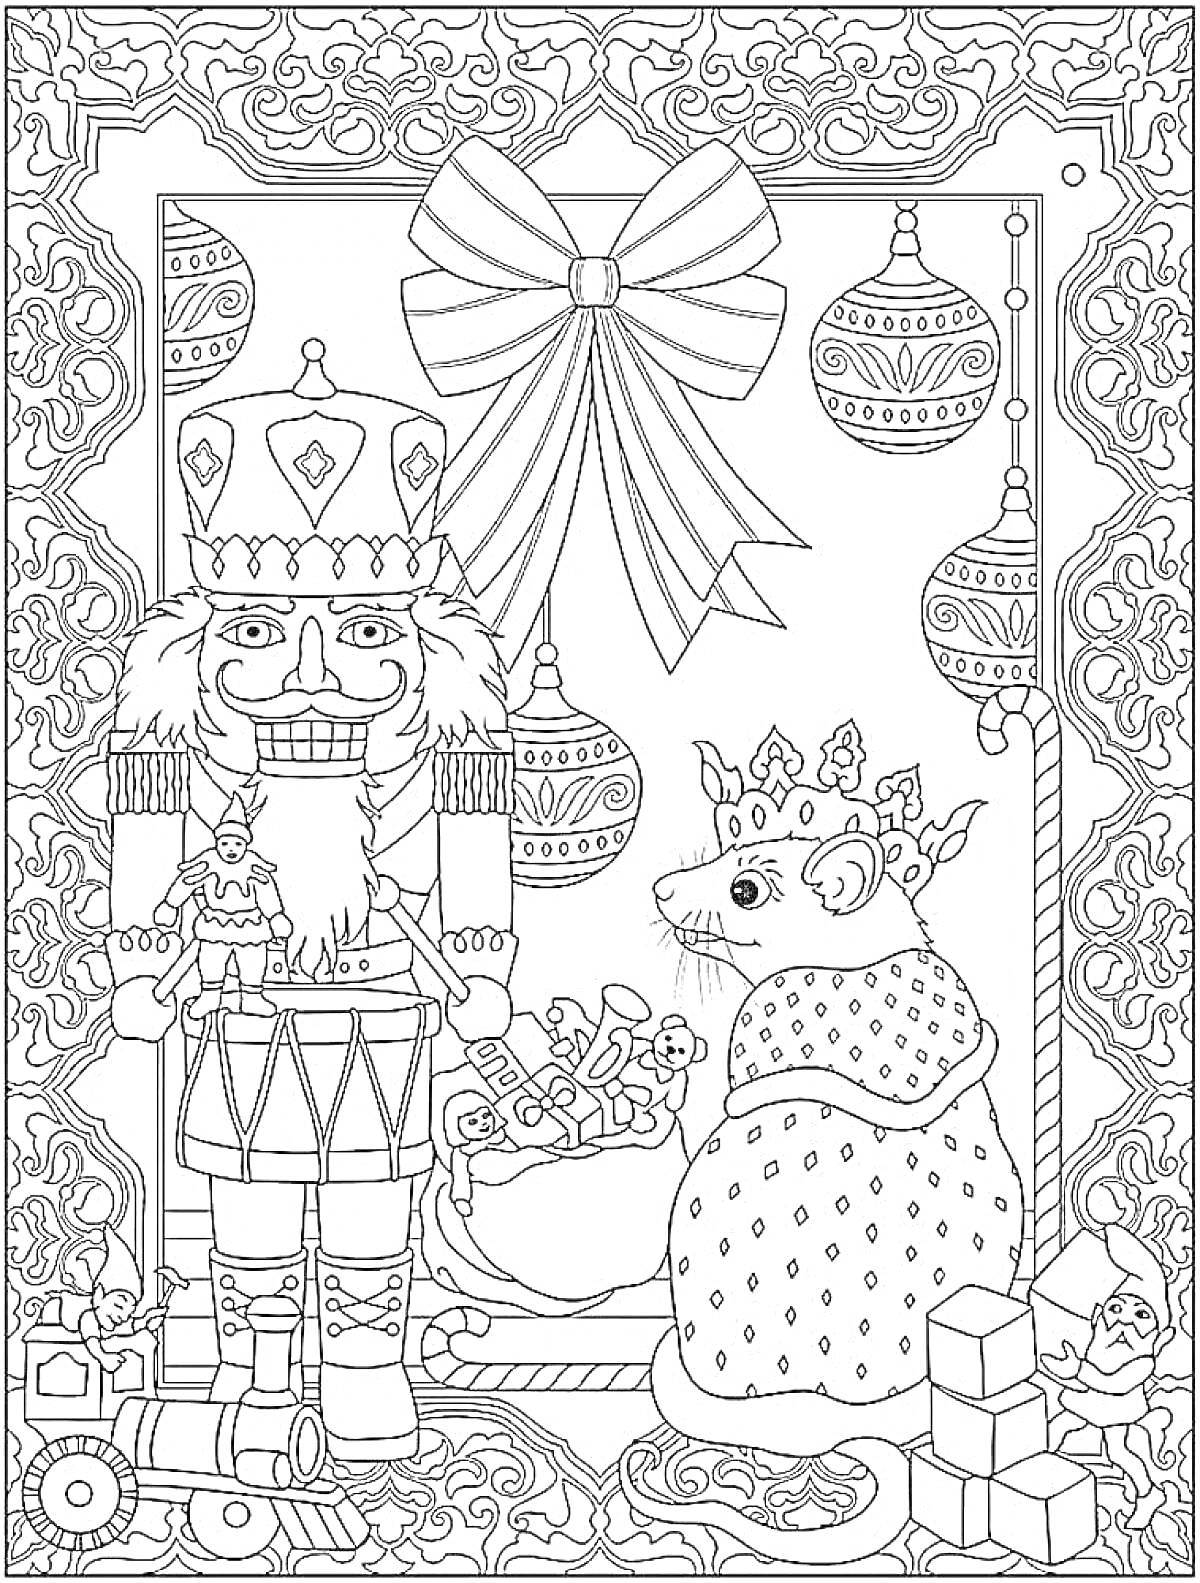 Раскраска Щелкунчик и Мышиный король с подарками и елочными украшениями